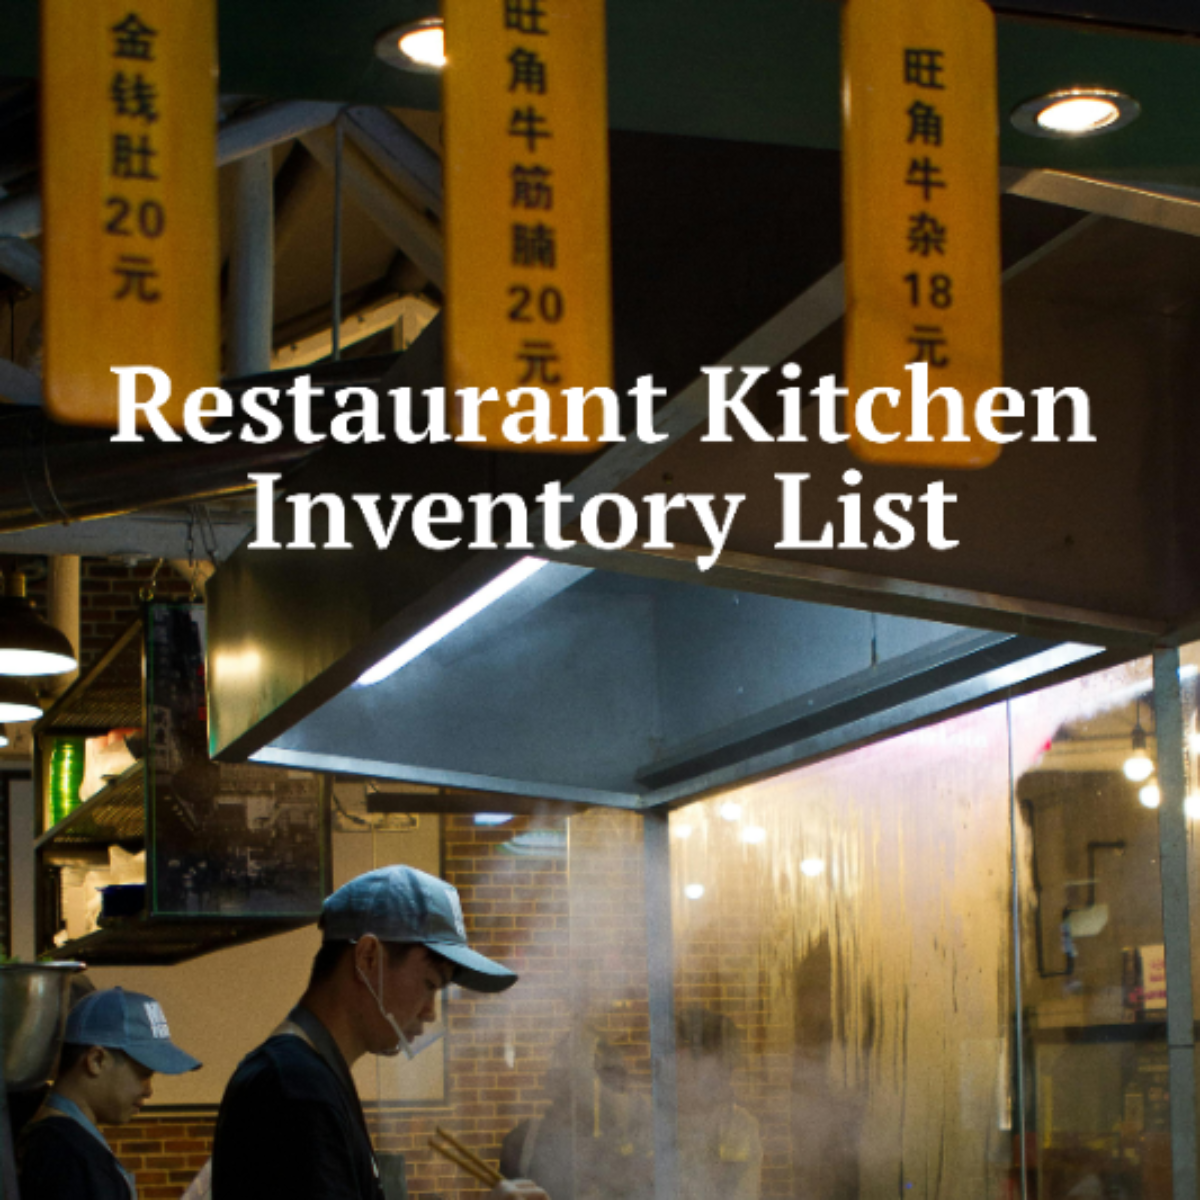 Restaurant Kitchen Inventory List Template